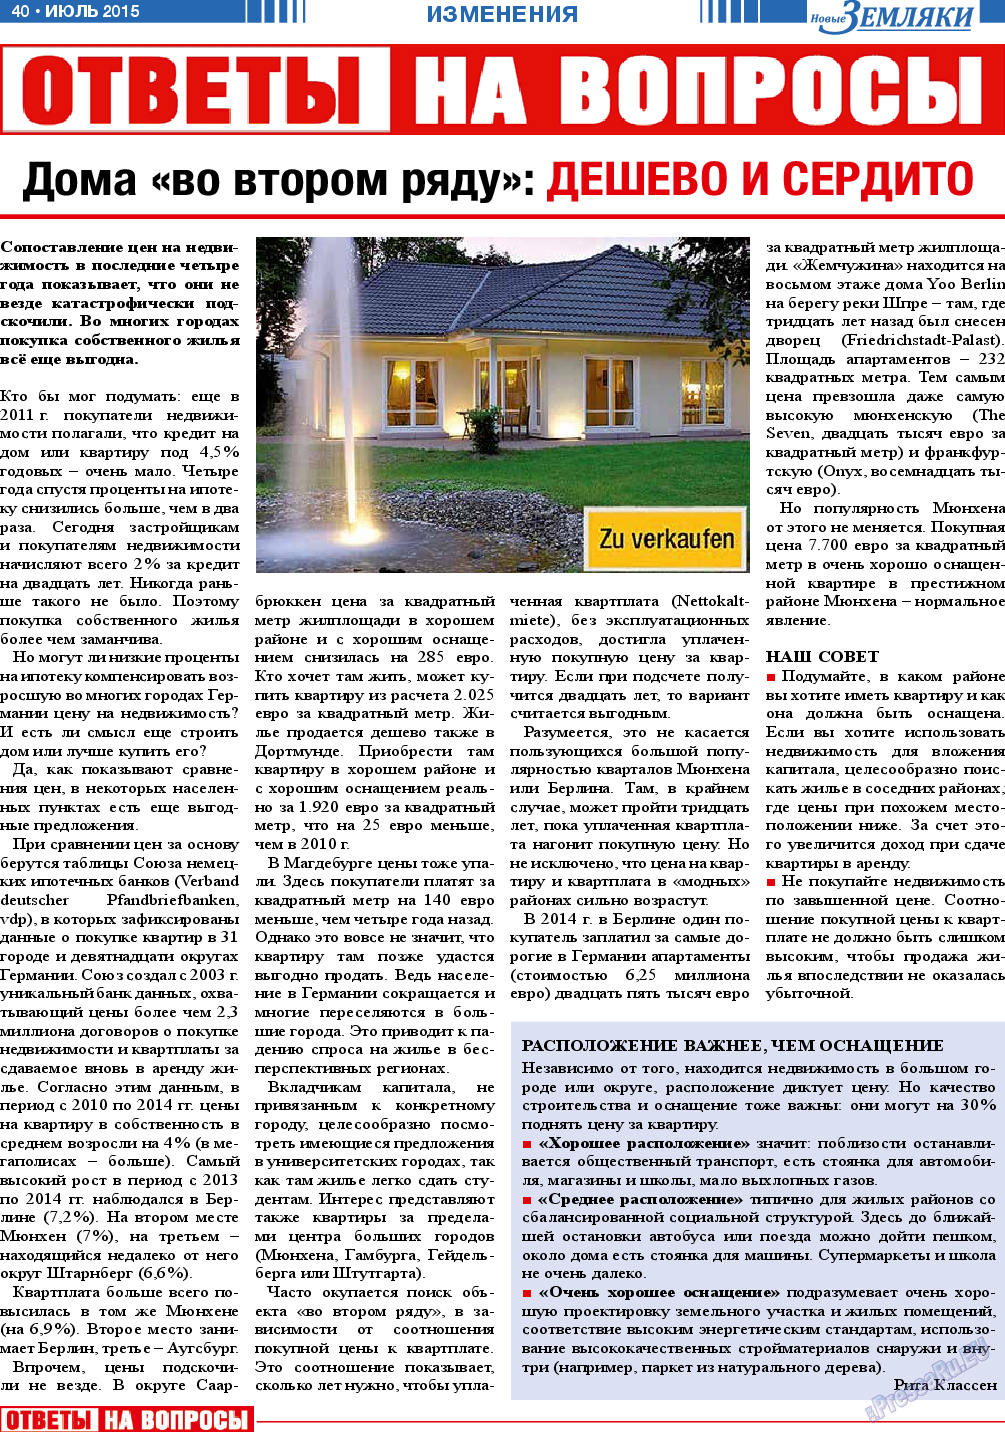 Новые Земляки, газета. 2015 №7 стр.40